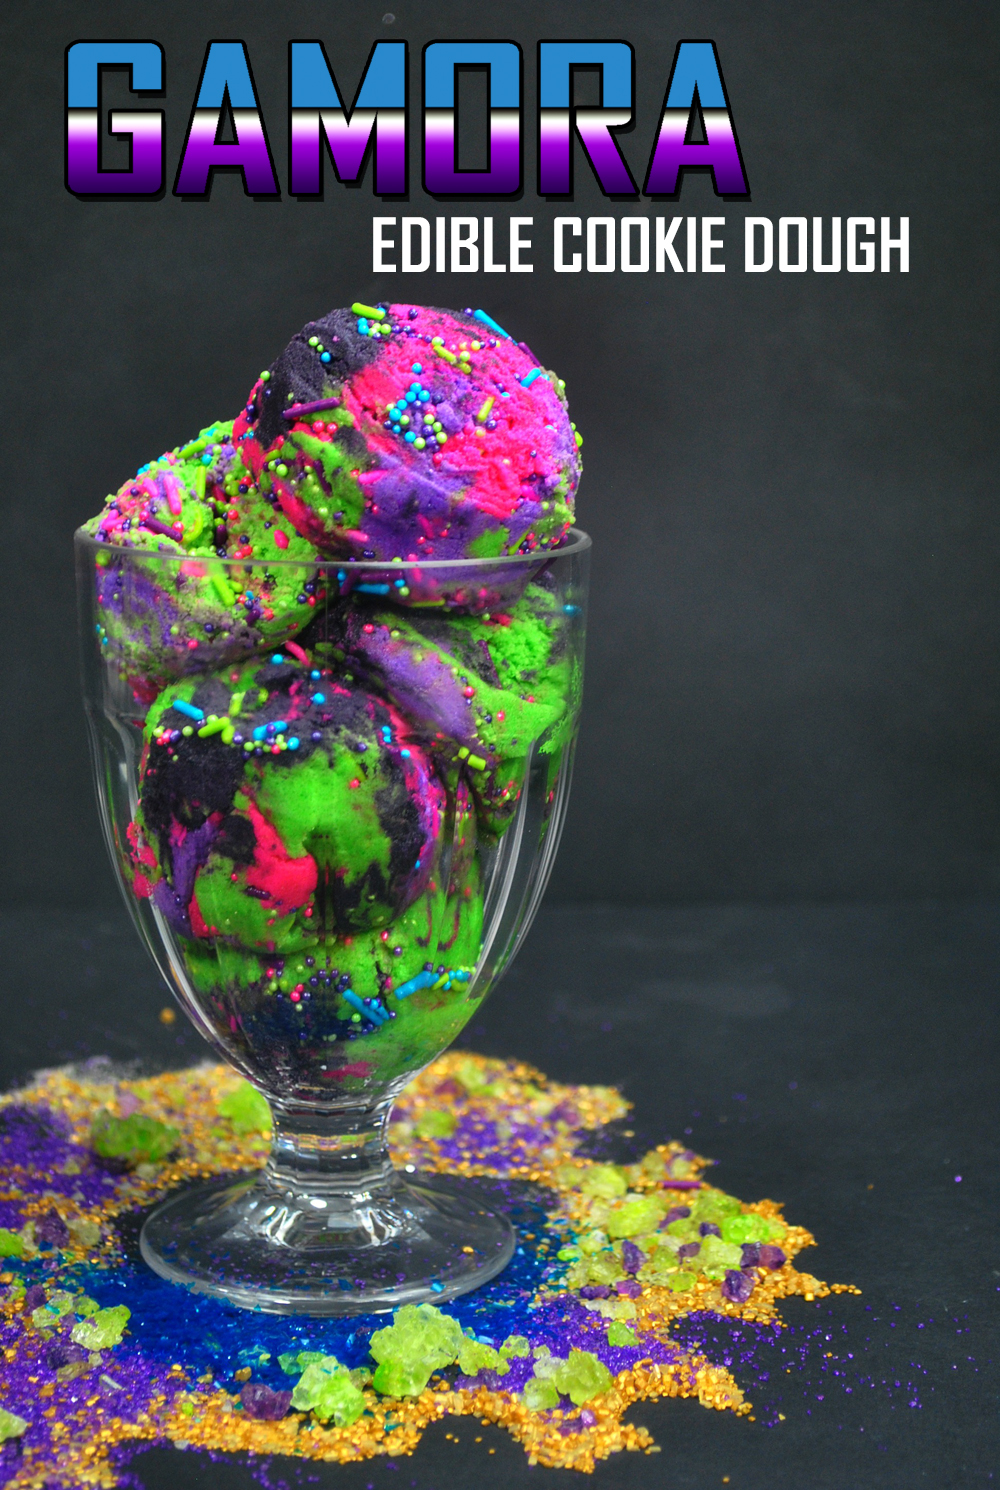 Gamora Edible Cookie Dough